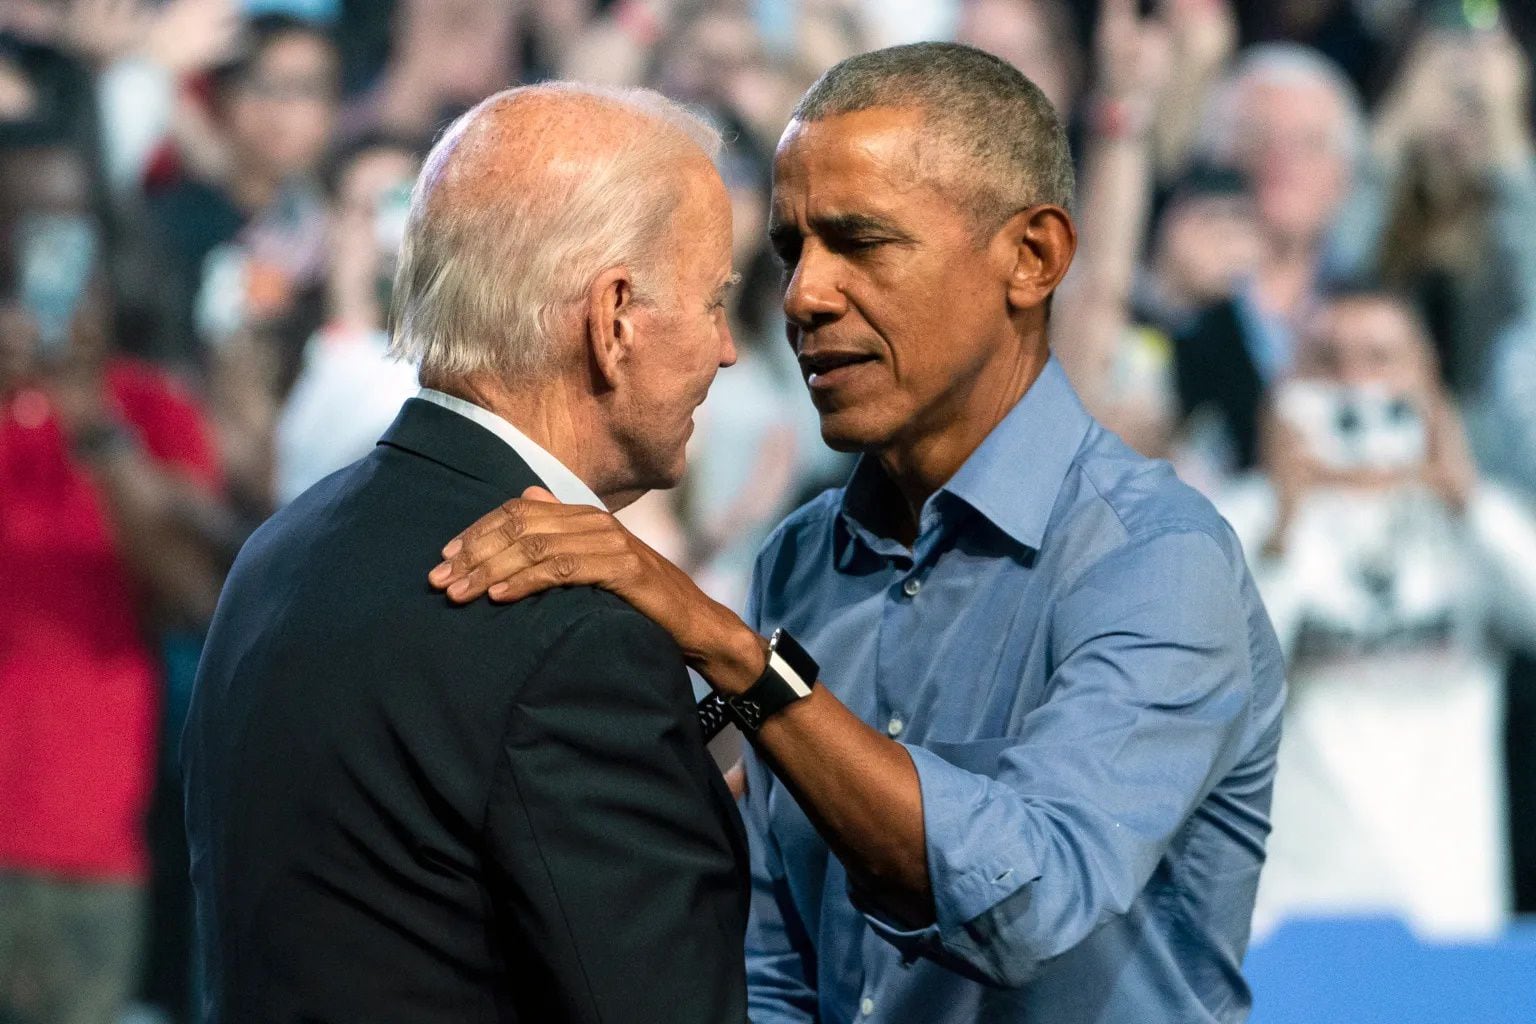 Obama cree que Biden debe ‘reconsiderar seriamente’ el futuro de su candidatura, según el Post